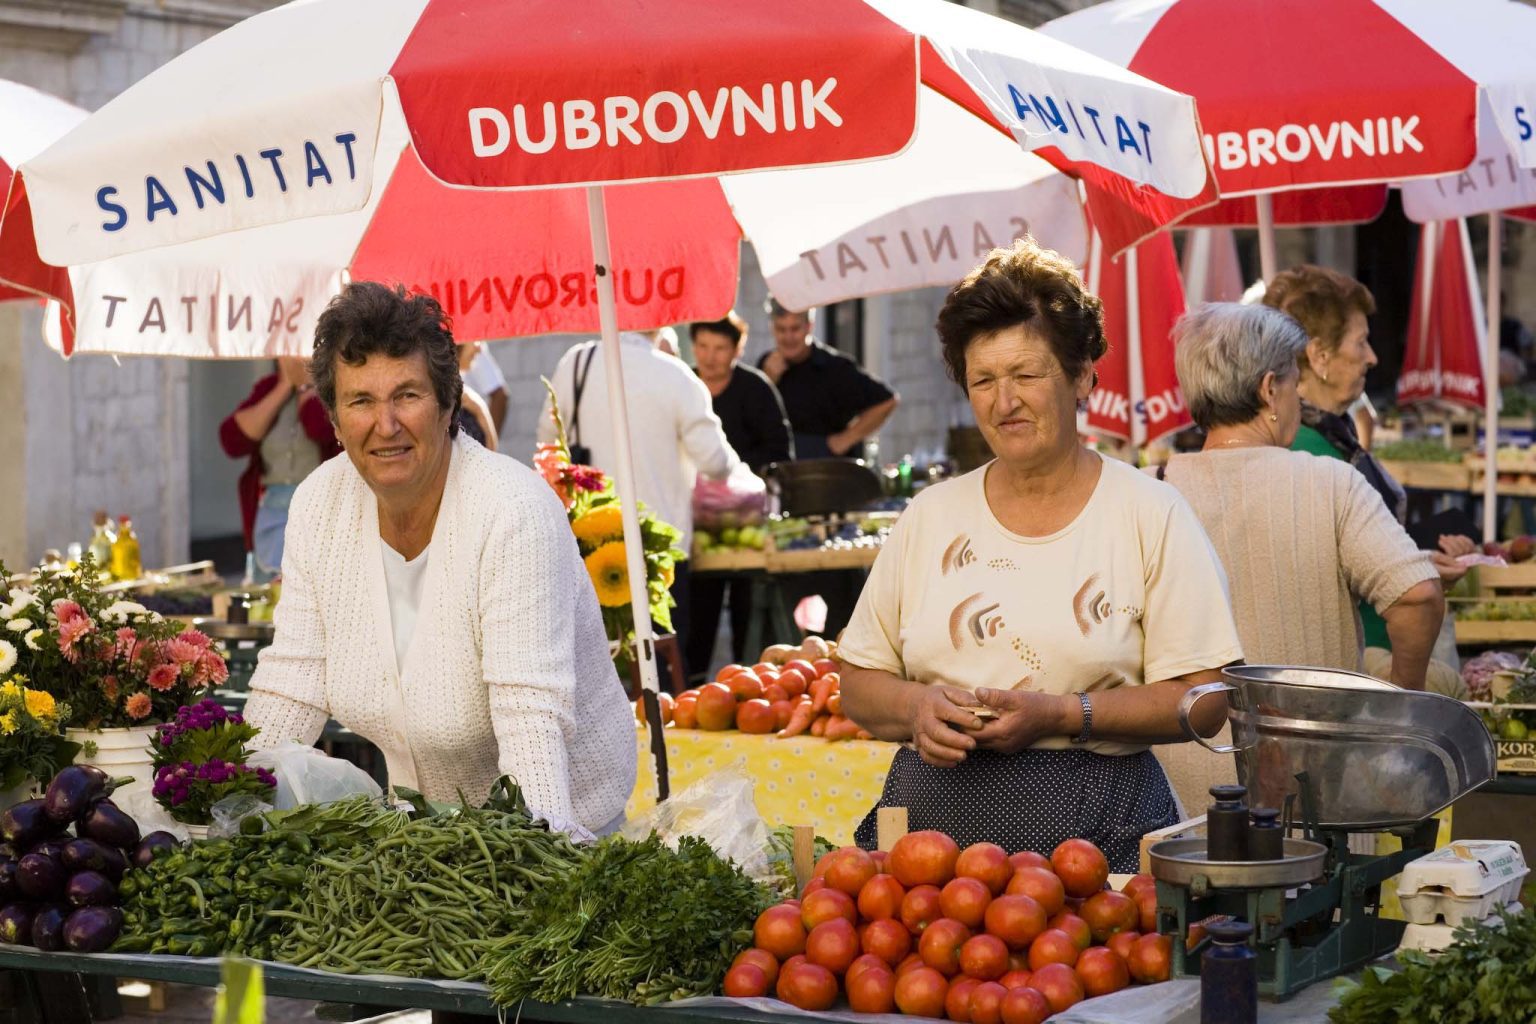 Market Dubrovnik